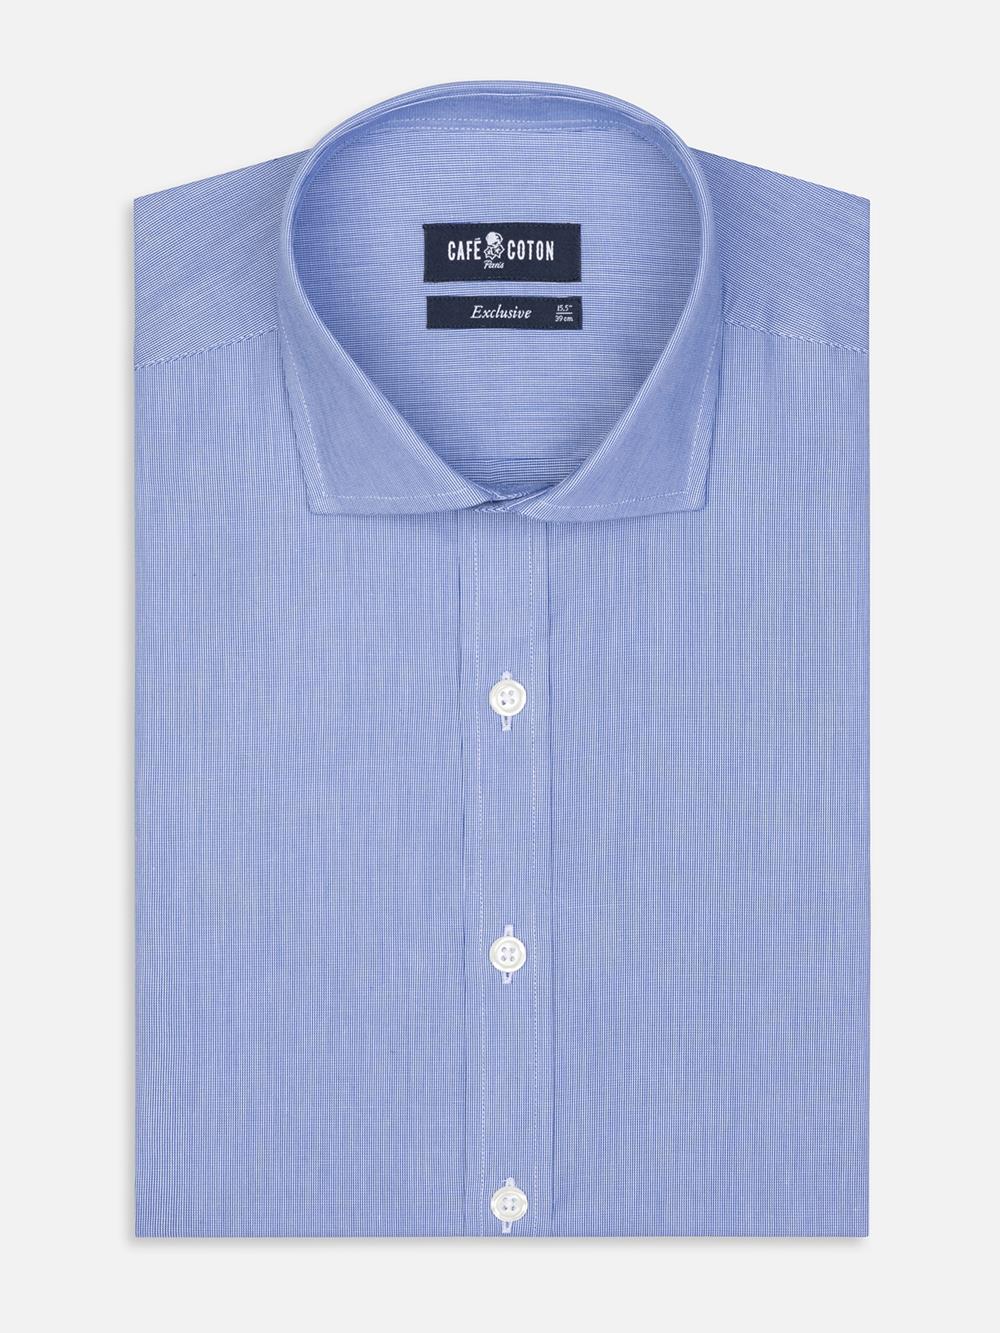 Tailliertes Hemd mit tausend Streifen blau - Große Ärmellänge